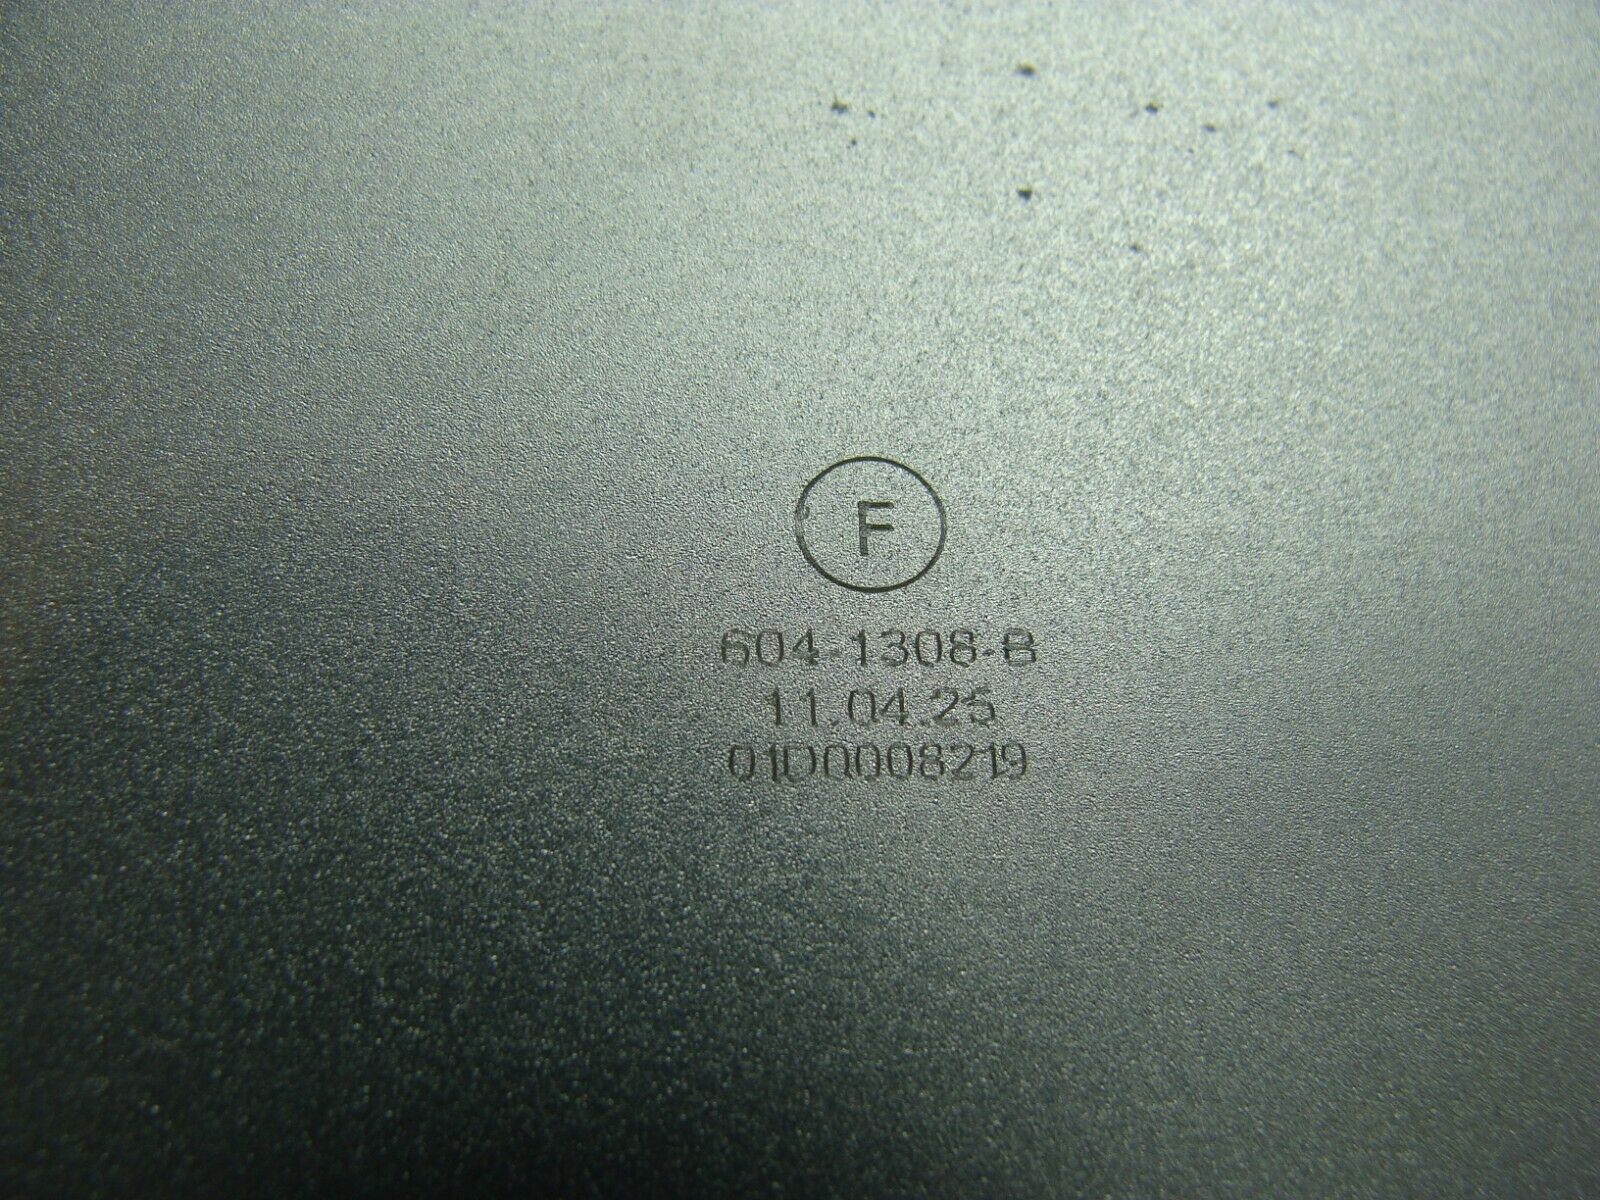 Macbook Air A1370 MC505LL/A Late 2010 11